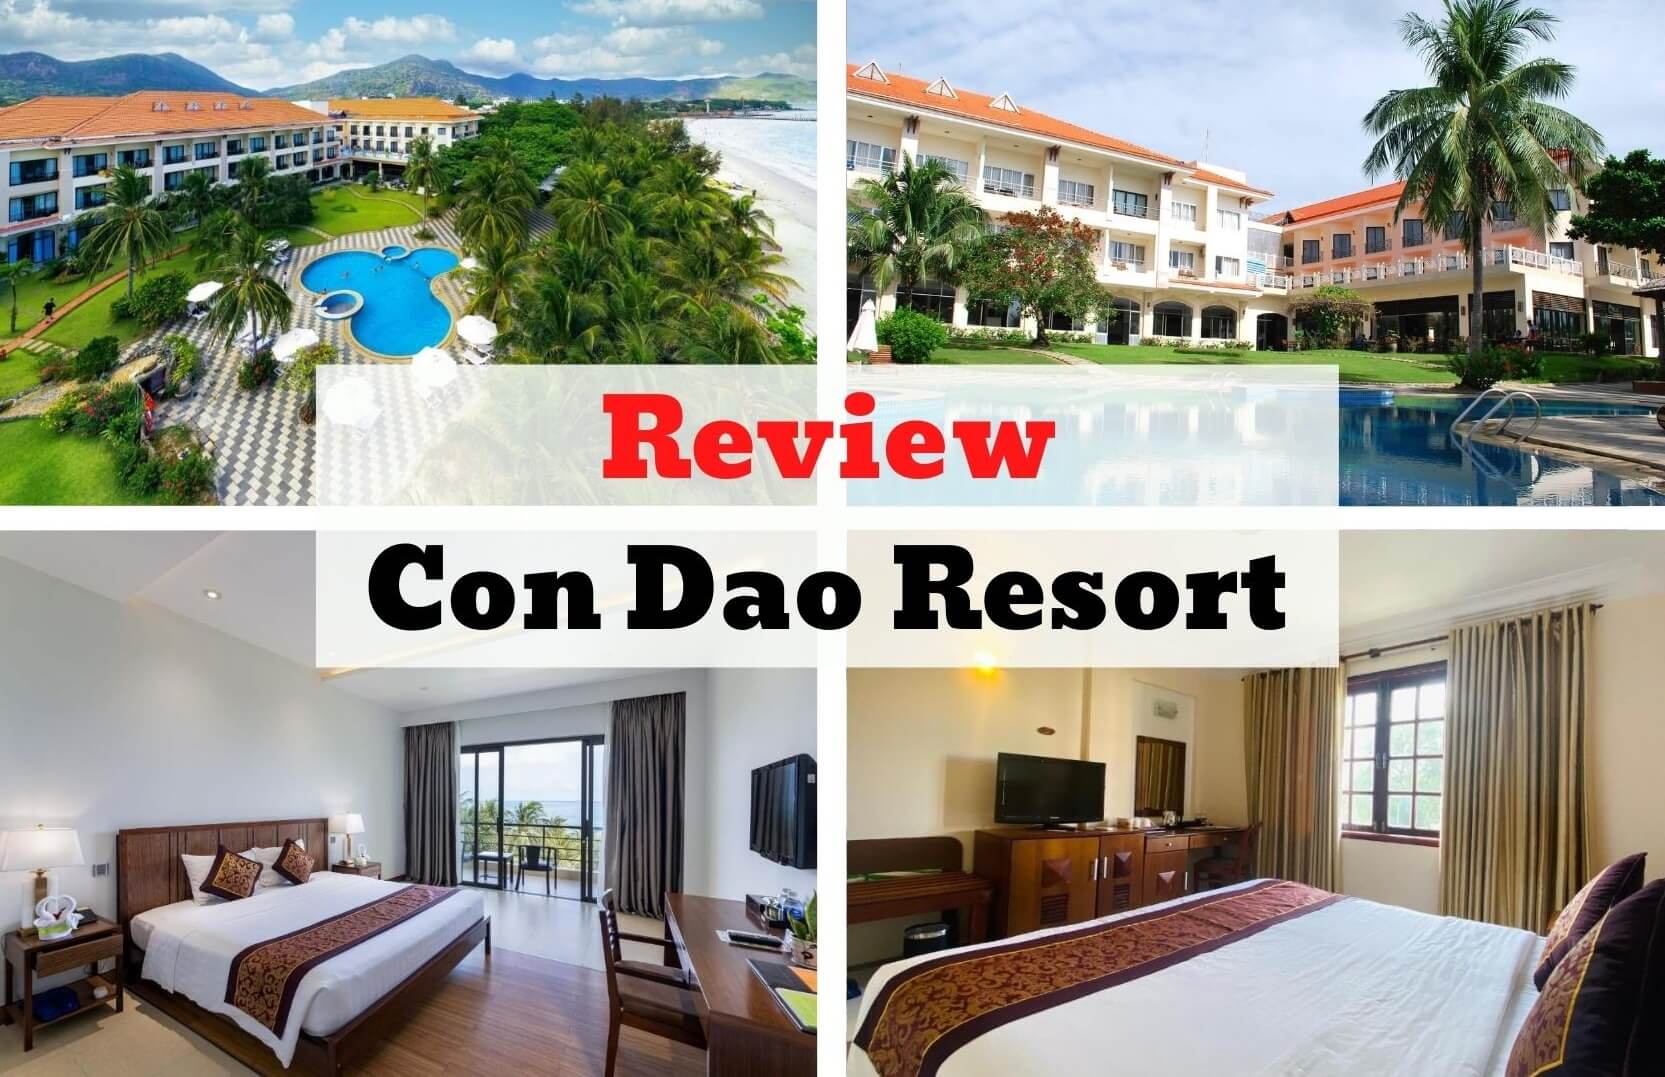 Review Con Dao Resort - Nét đẹp dung dị trên huyện đảo thanh bình